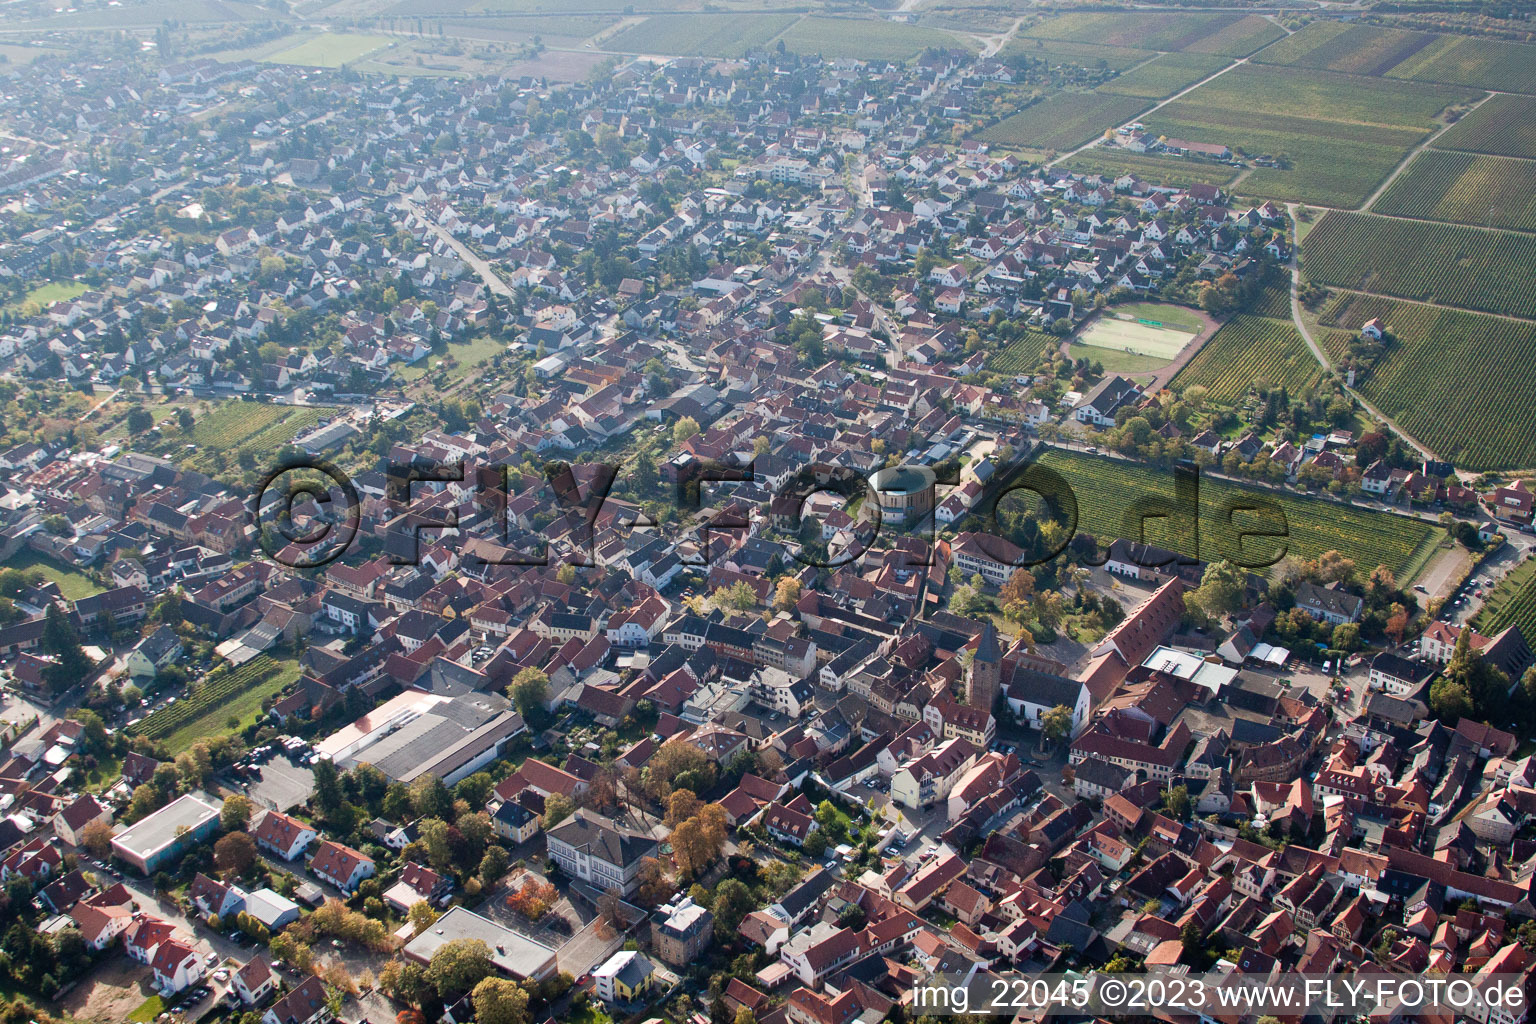 Luftbild von Ortsteil Mußbach in Neustadt an der Weinstraße im Bundesland Rheinland-Pfalz, Deutschland